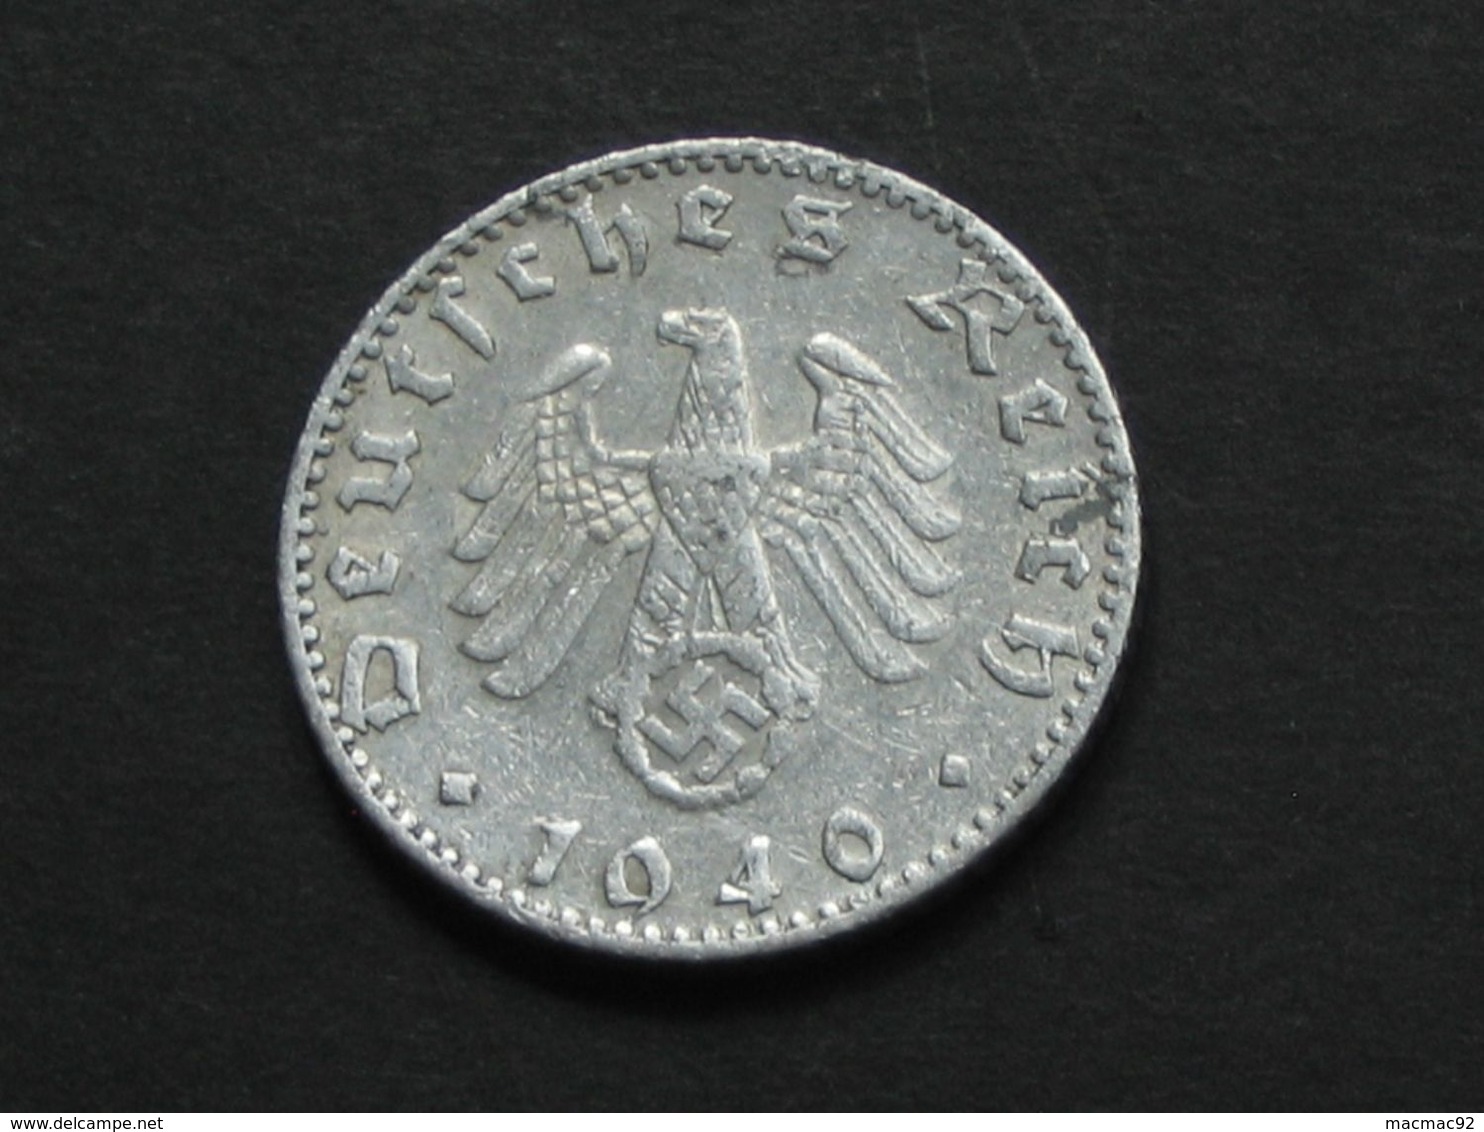 RARE !!  50 Reichspfennig 1940 J  - Germany- Allemagne 3 Eme Reich   **** EN ACHAT IMMEDIAT **** - 50 Reichspfennig